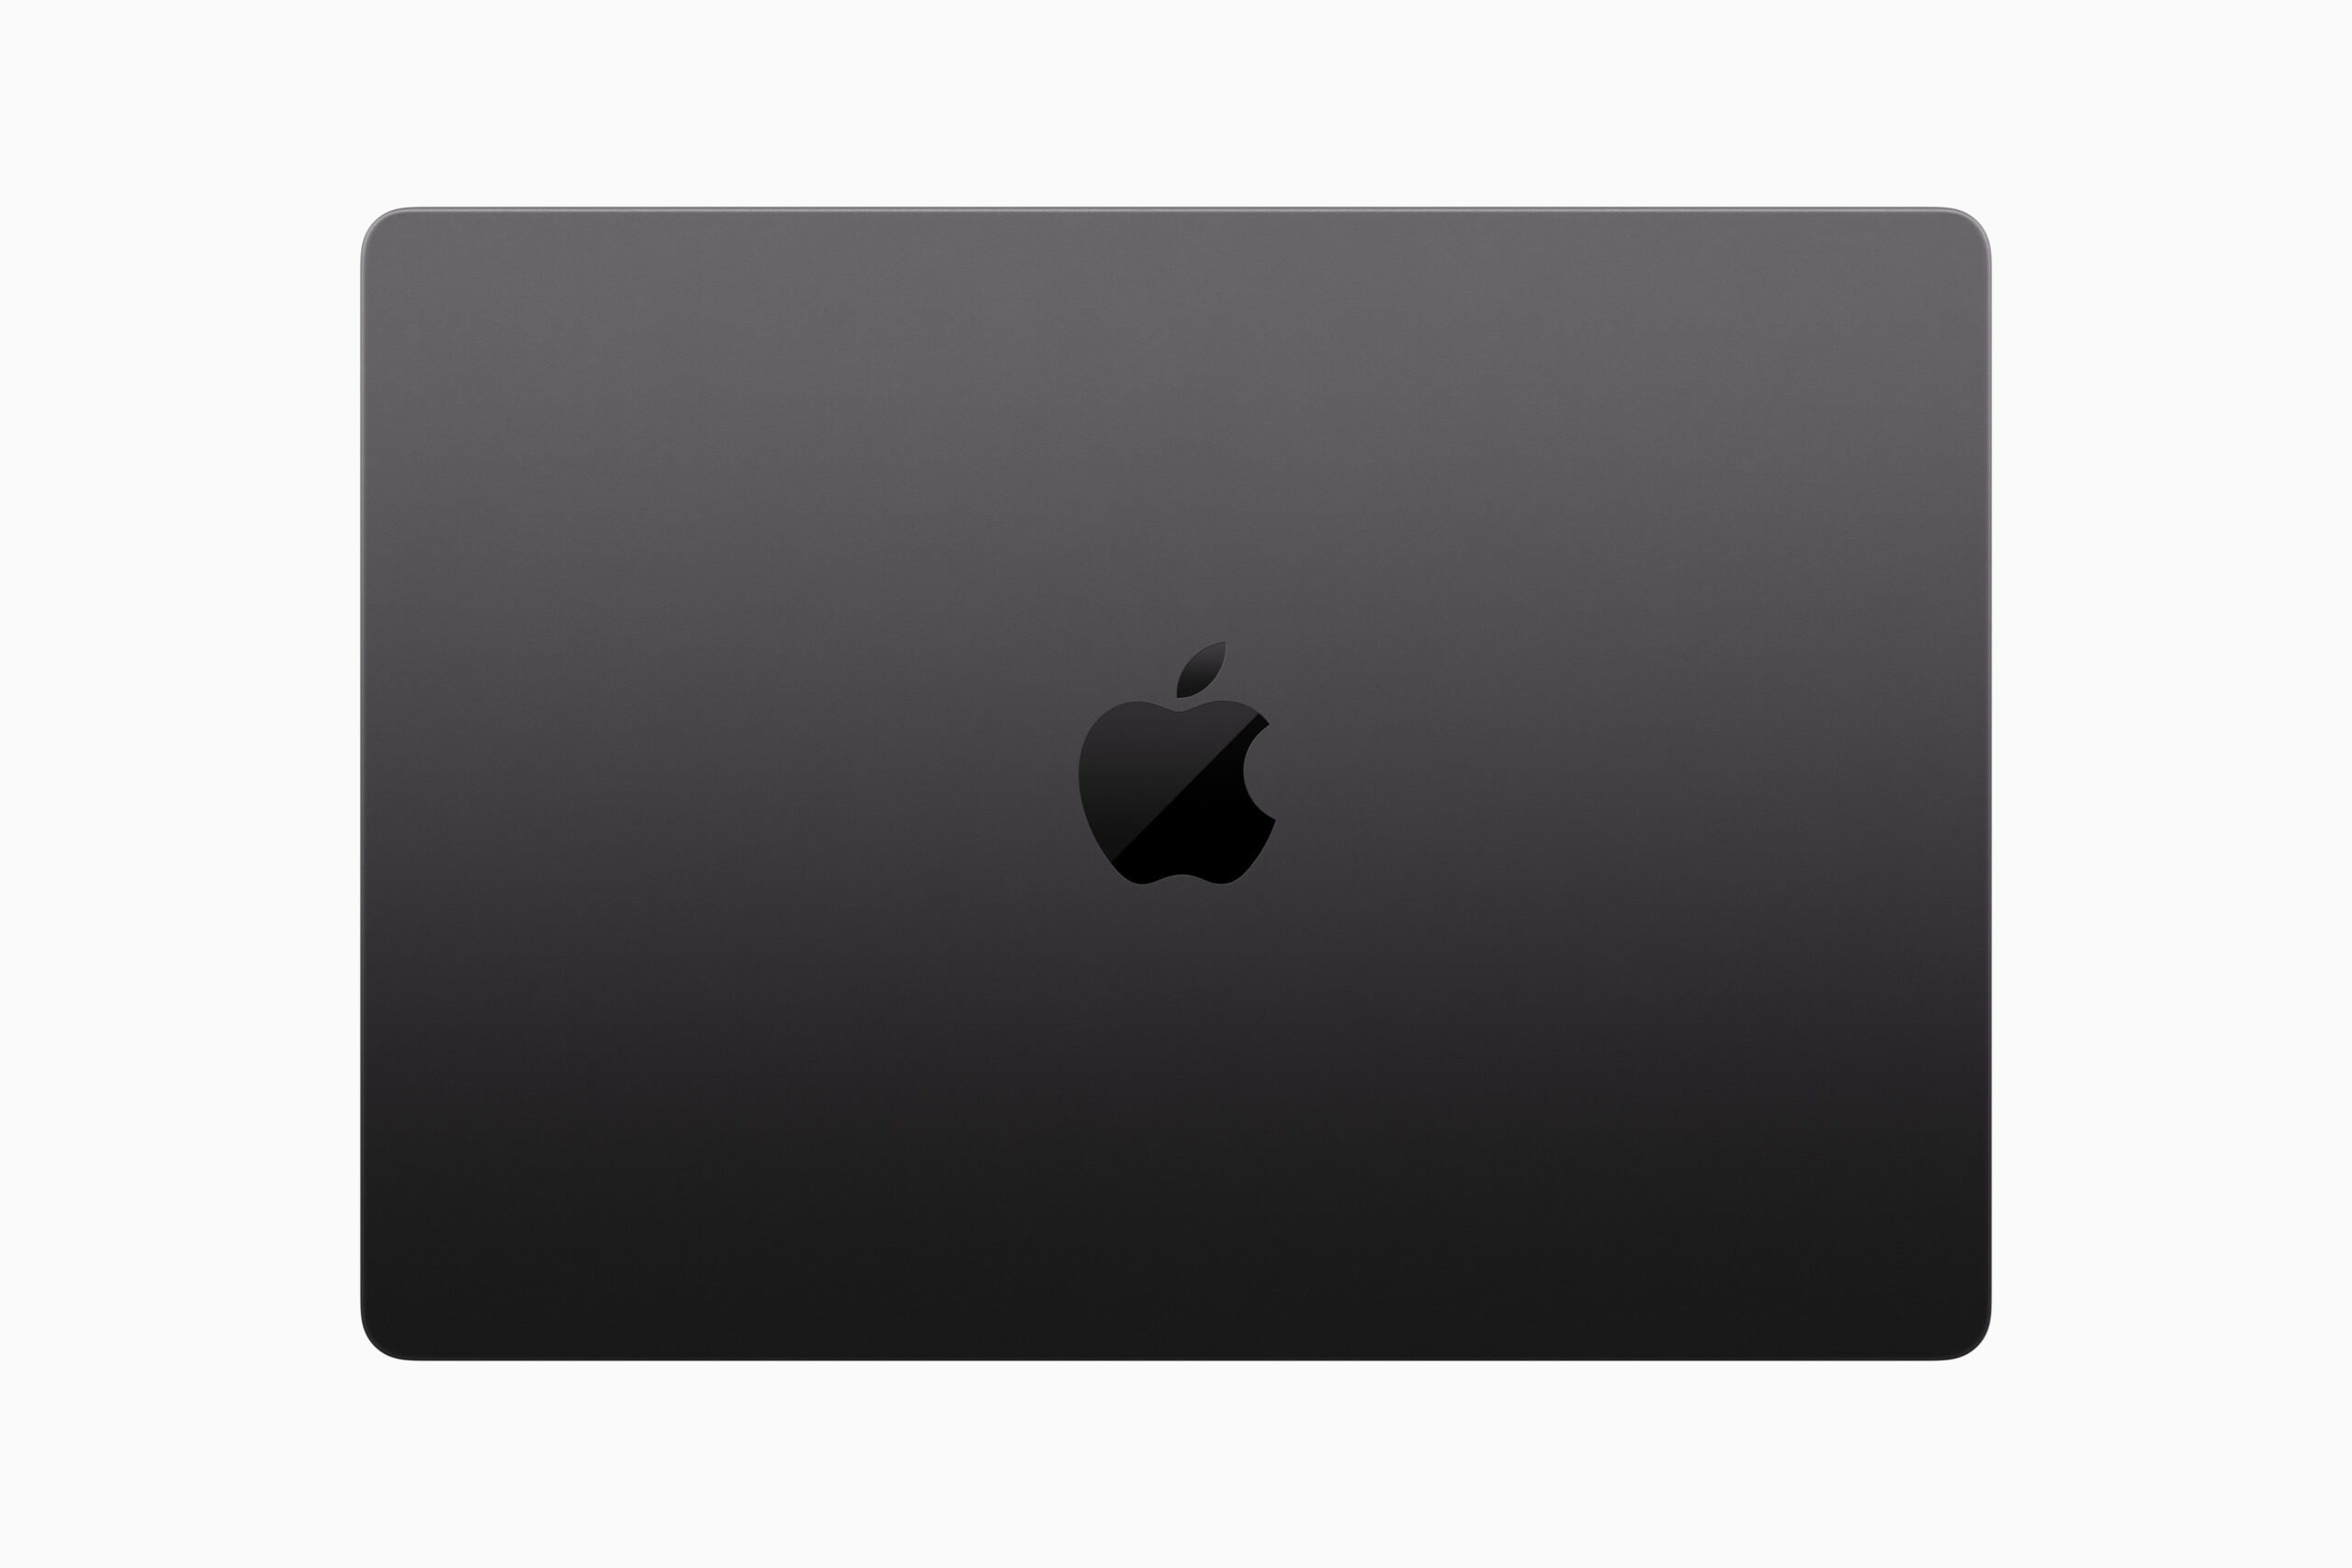 Apple-macbook-pro-top-view-231030